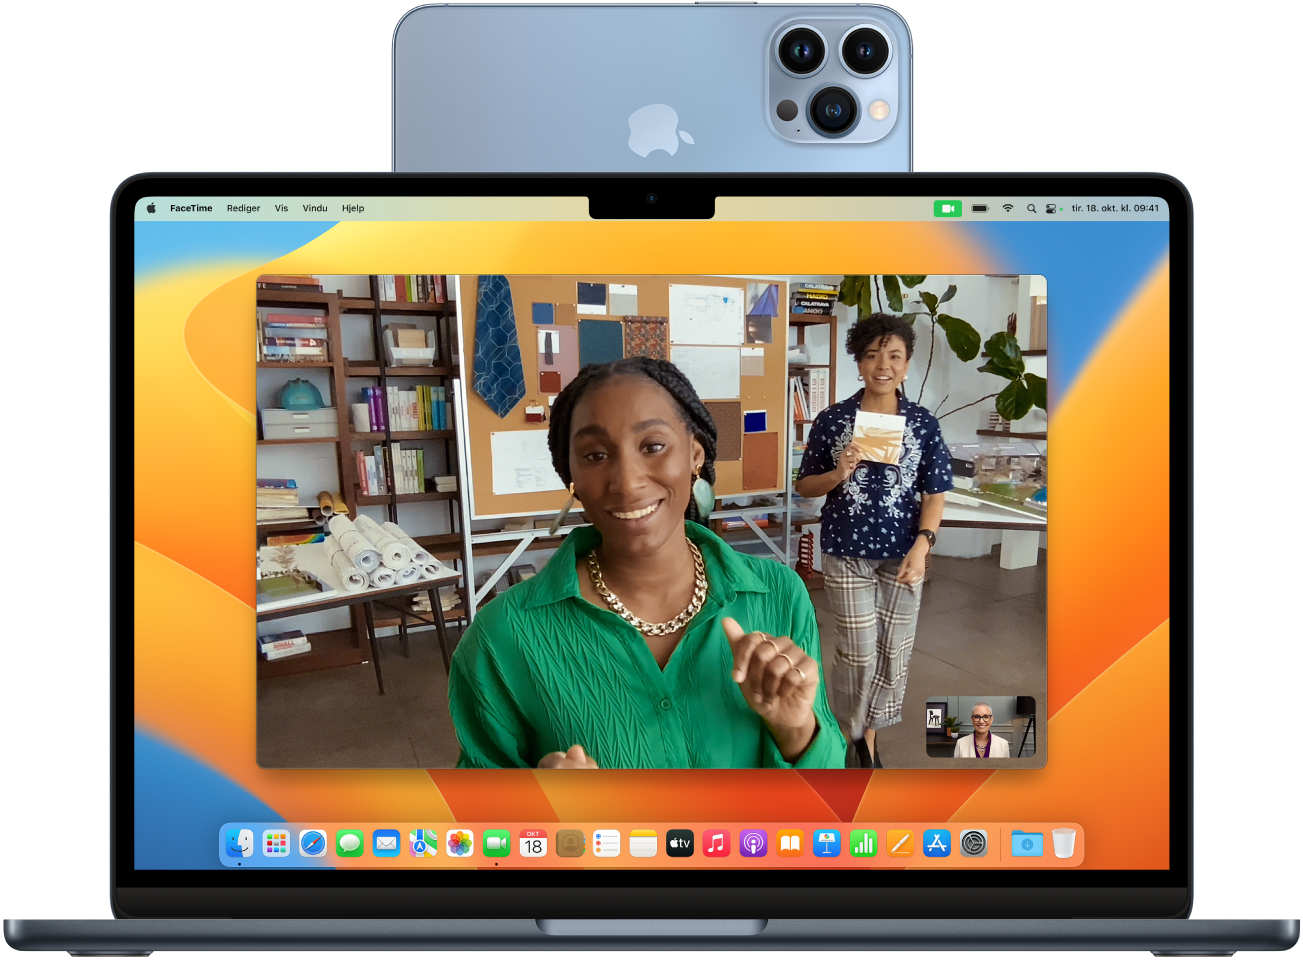 En Mac med en iPhone som brukes som webkamera montert øverst på skjermen. Bildet fra iPhone-kameraet er synlig på skjermen til Macen.